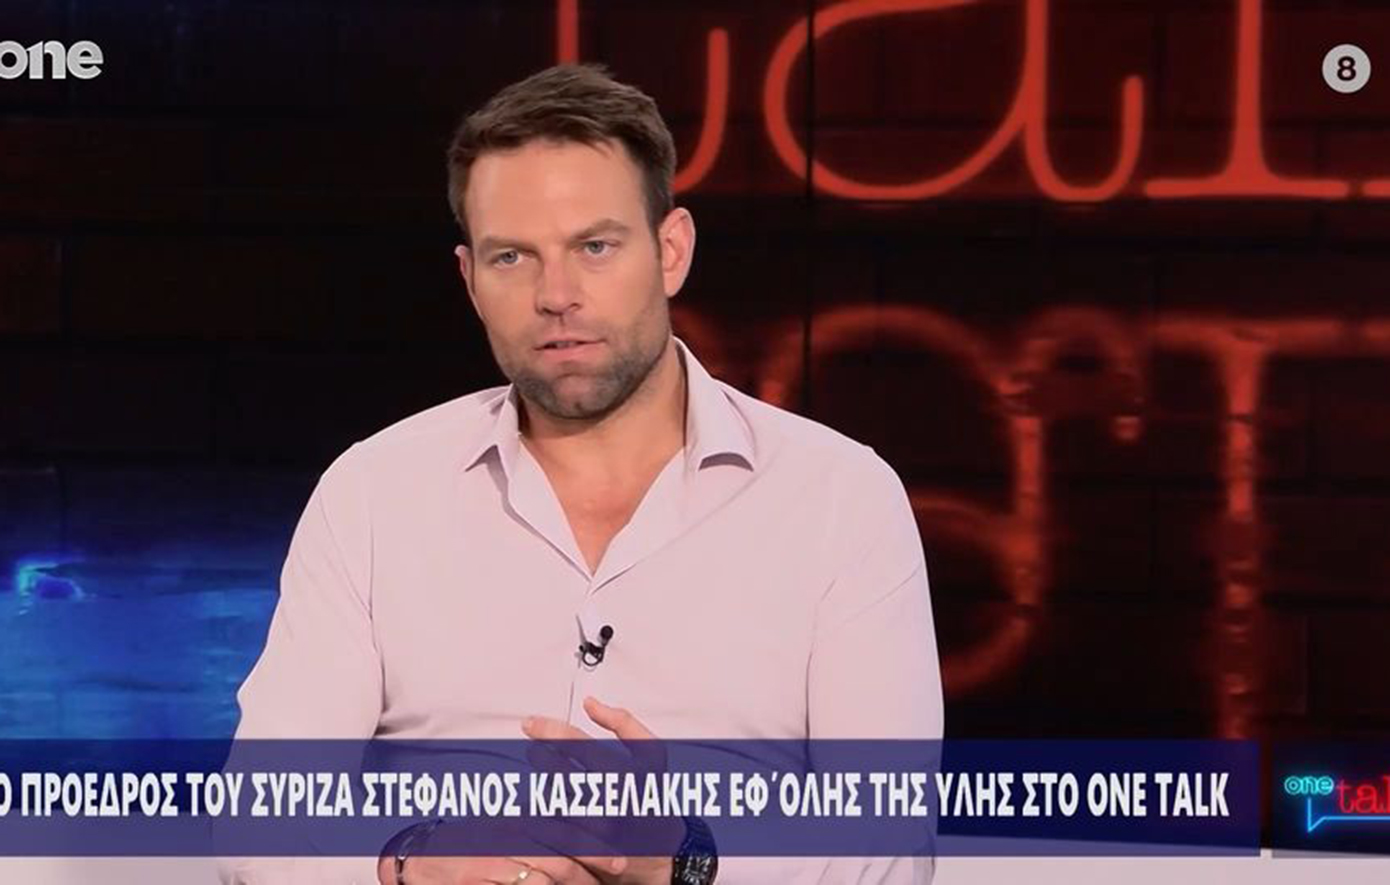 Κασσελάκης: Εάν η ανεξαρτησία του ΣΥΡΙΖΑ πετύχει, χαλάει η σούπα σε όλη την πολιτική στην Ελλάδα